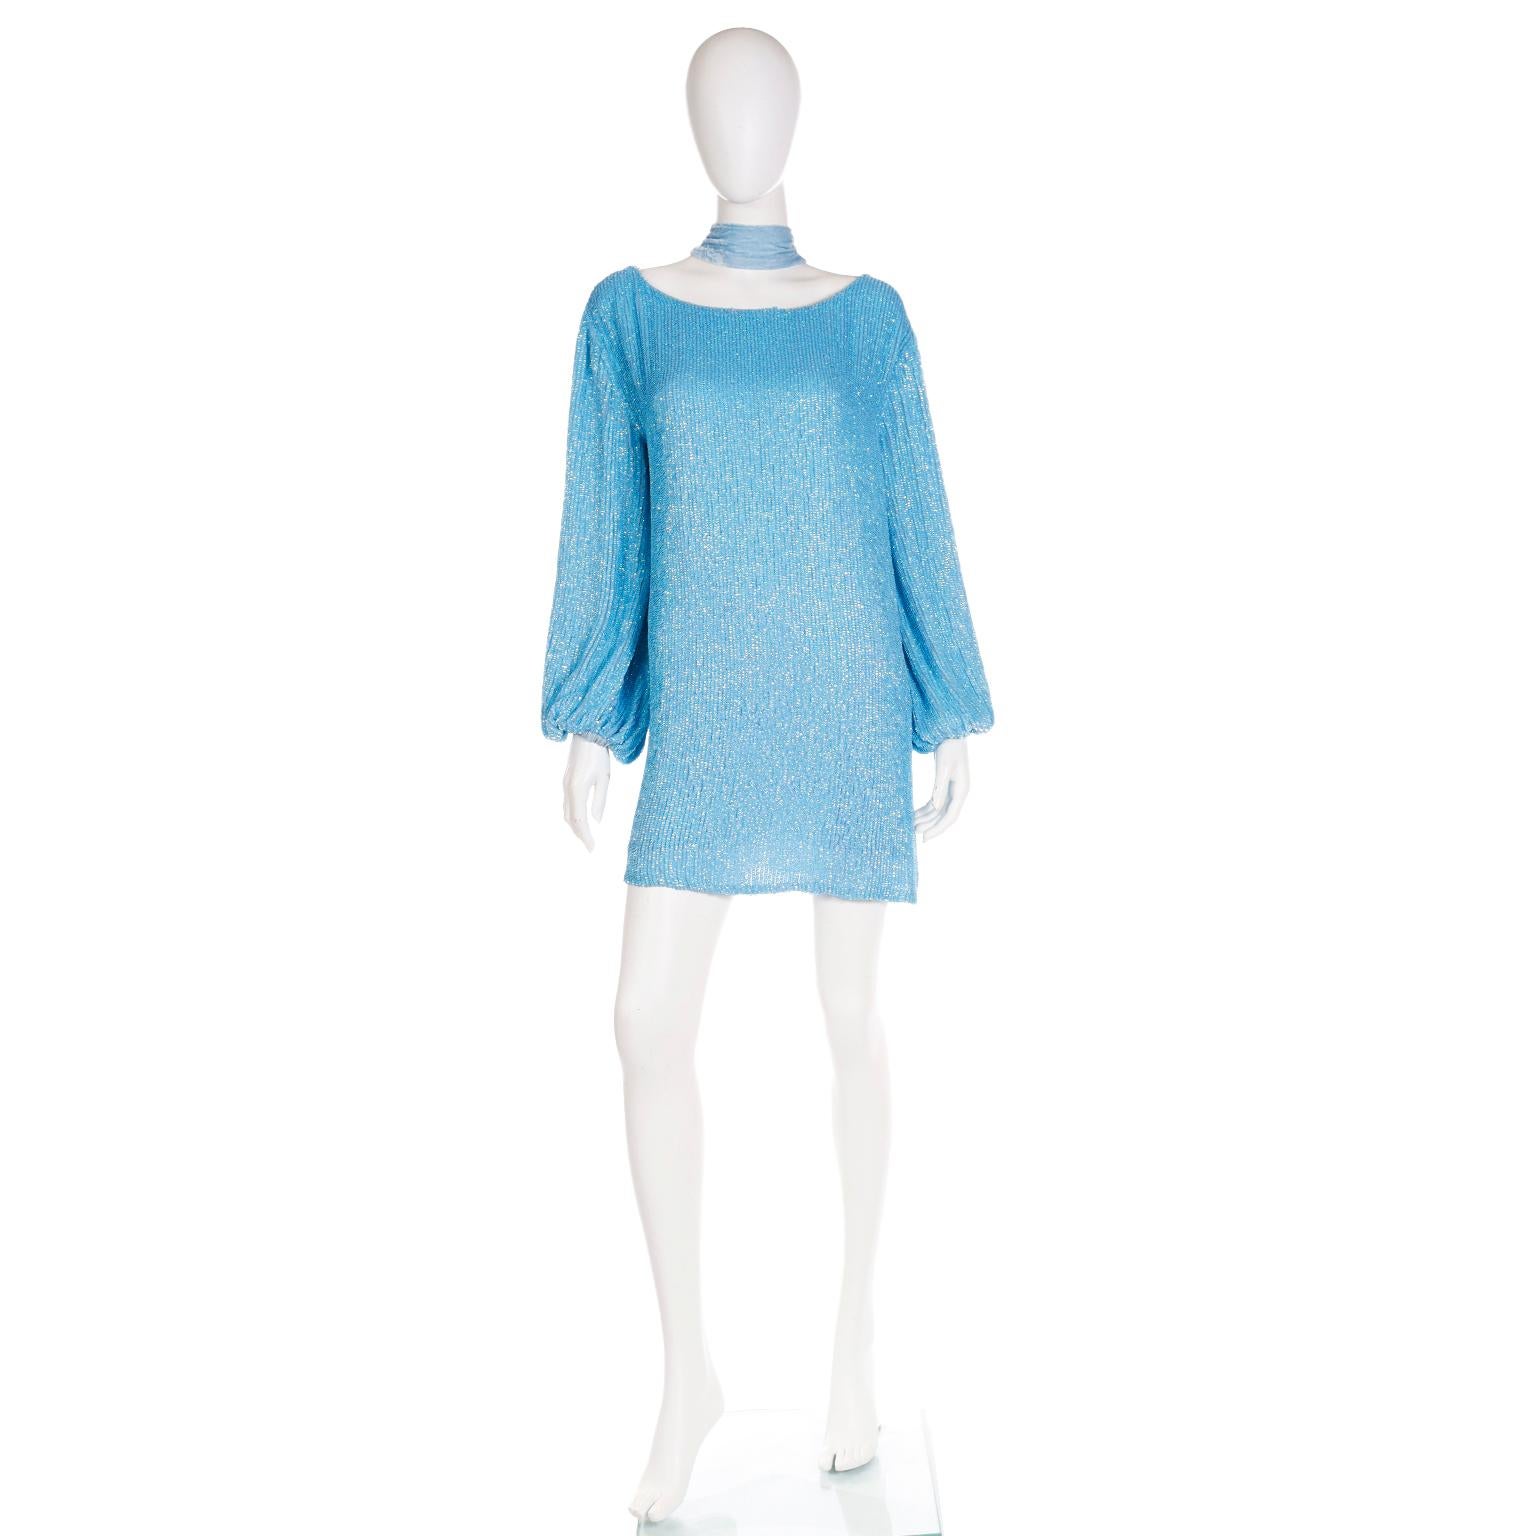 Il s'agit d'une ravissante mini robe à paillettes Retrofete dans une belle nuance de bleu avec son étiquette d'origine encore attachée.  Cette robe amusante peut être portée de manière ample, ceinturée ou comme une tunique sur un pantalon. La